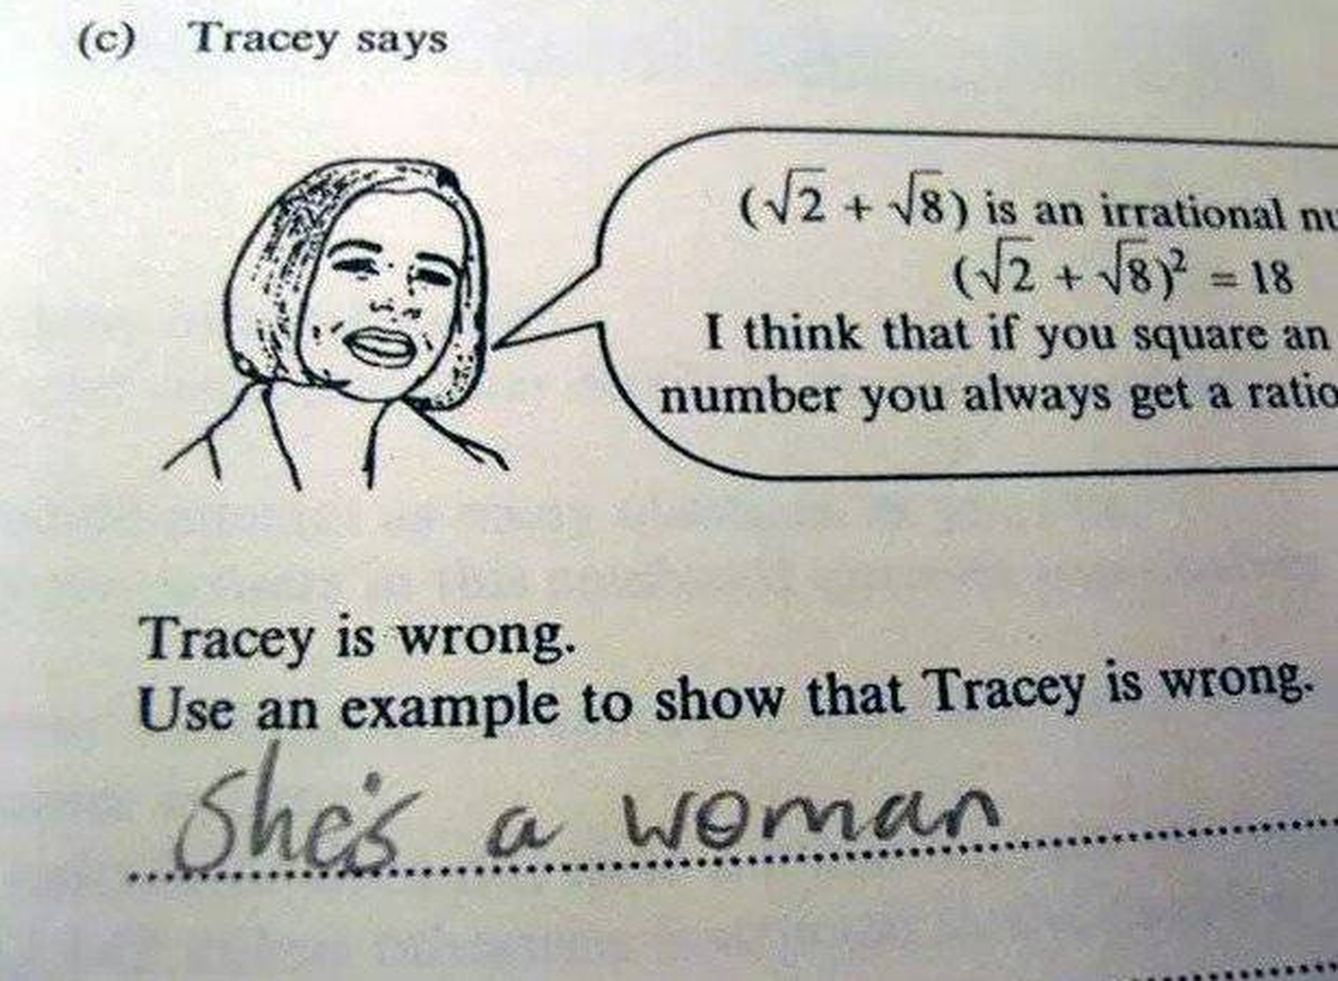 Tracey está equivocada, demuéstralo con un ejemplo.